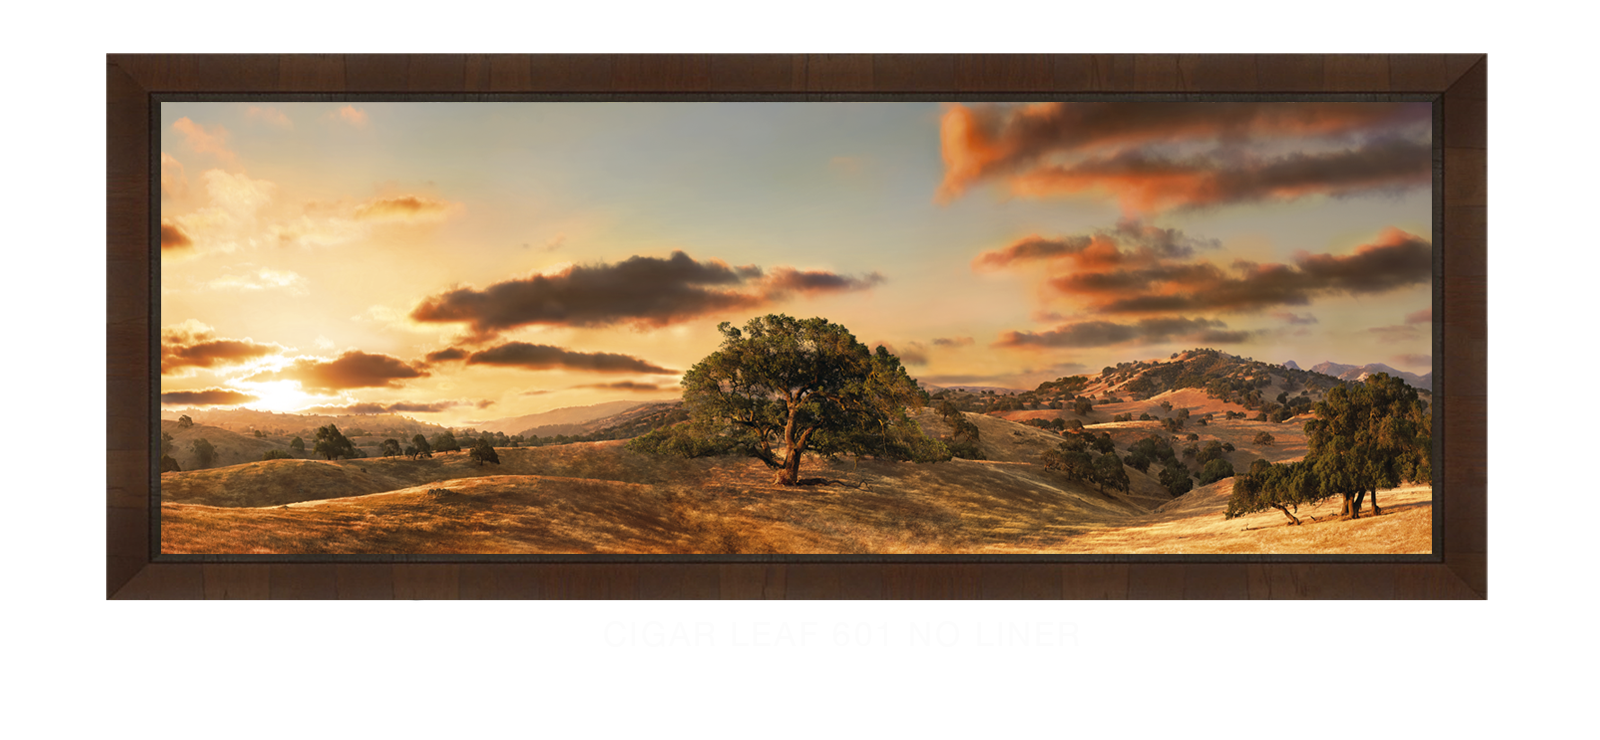 31OAKS Cigar Leaf 601 w_No Liner T